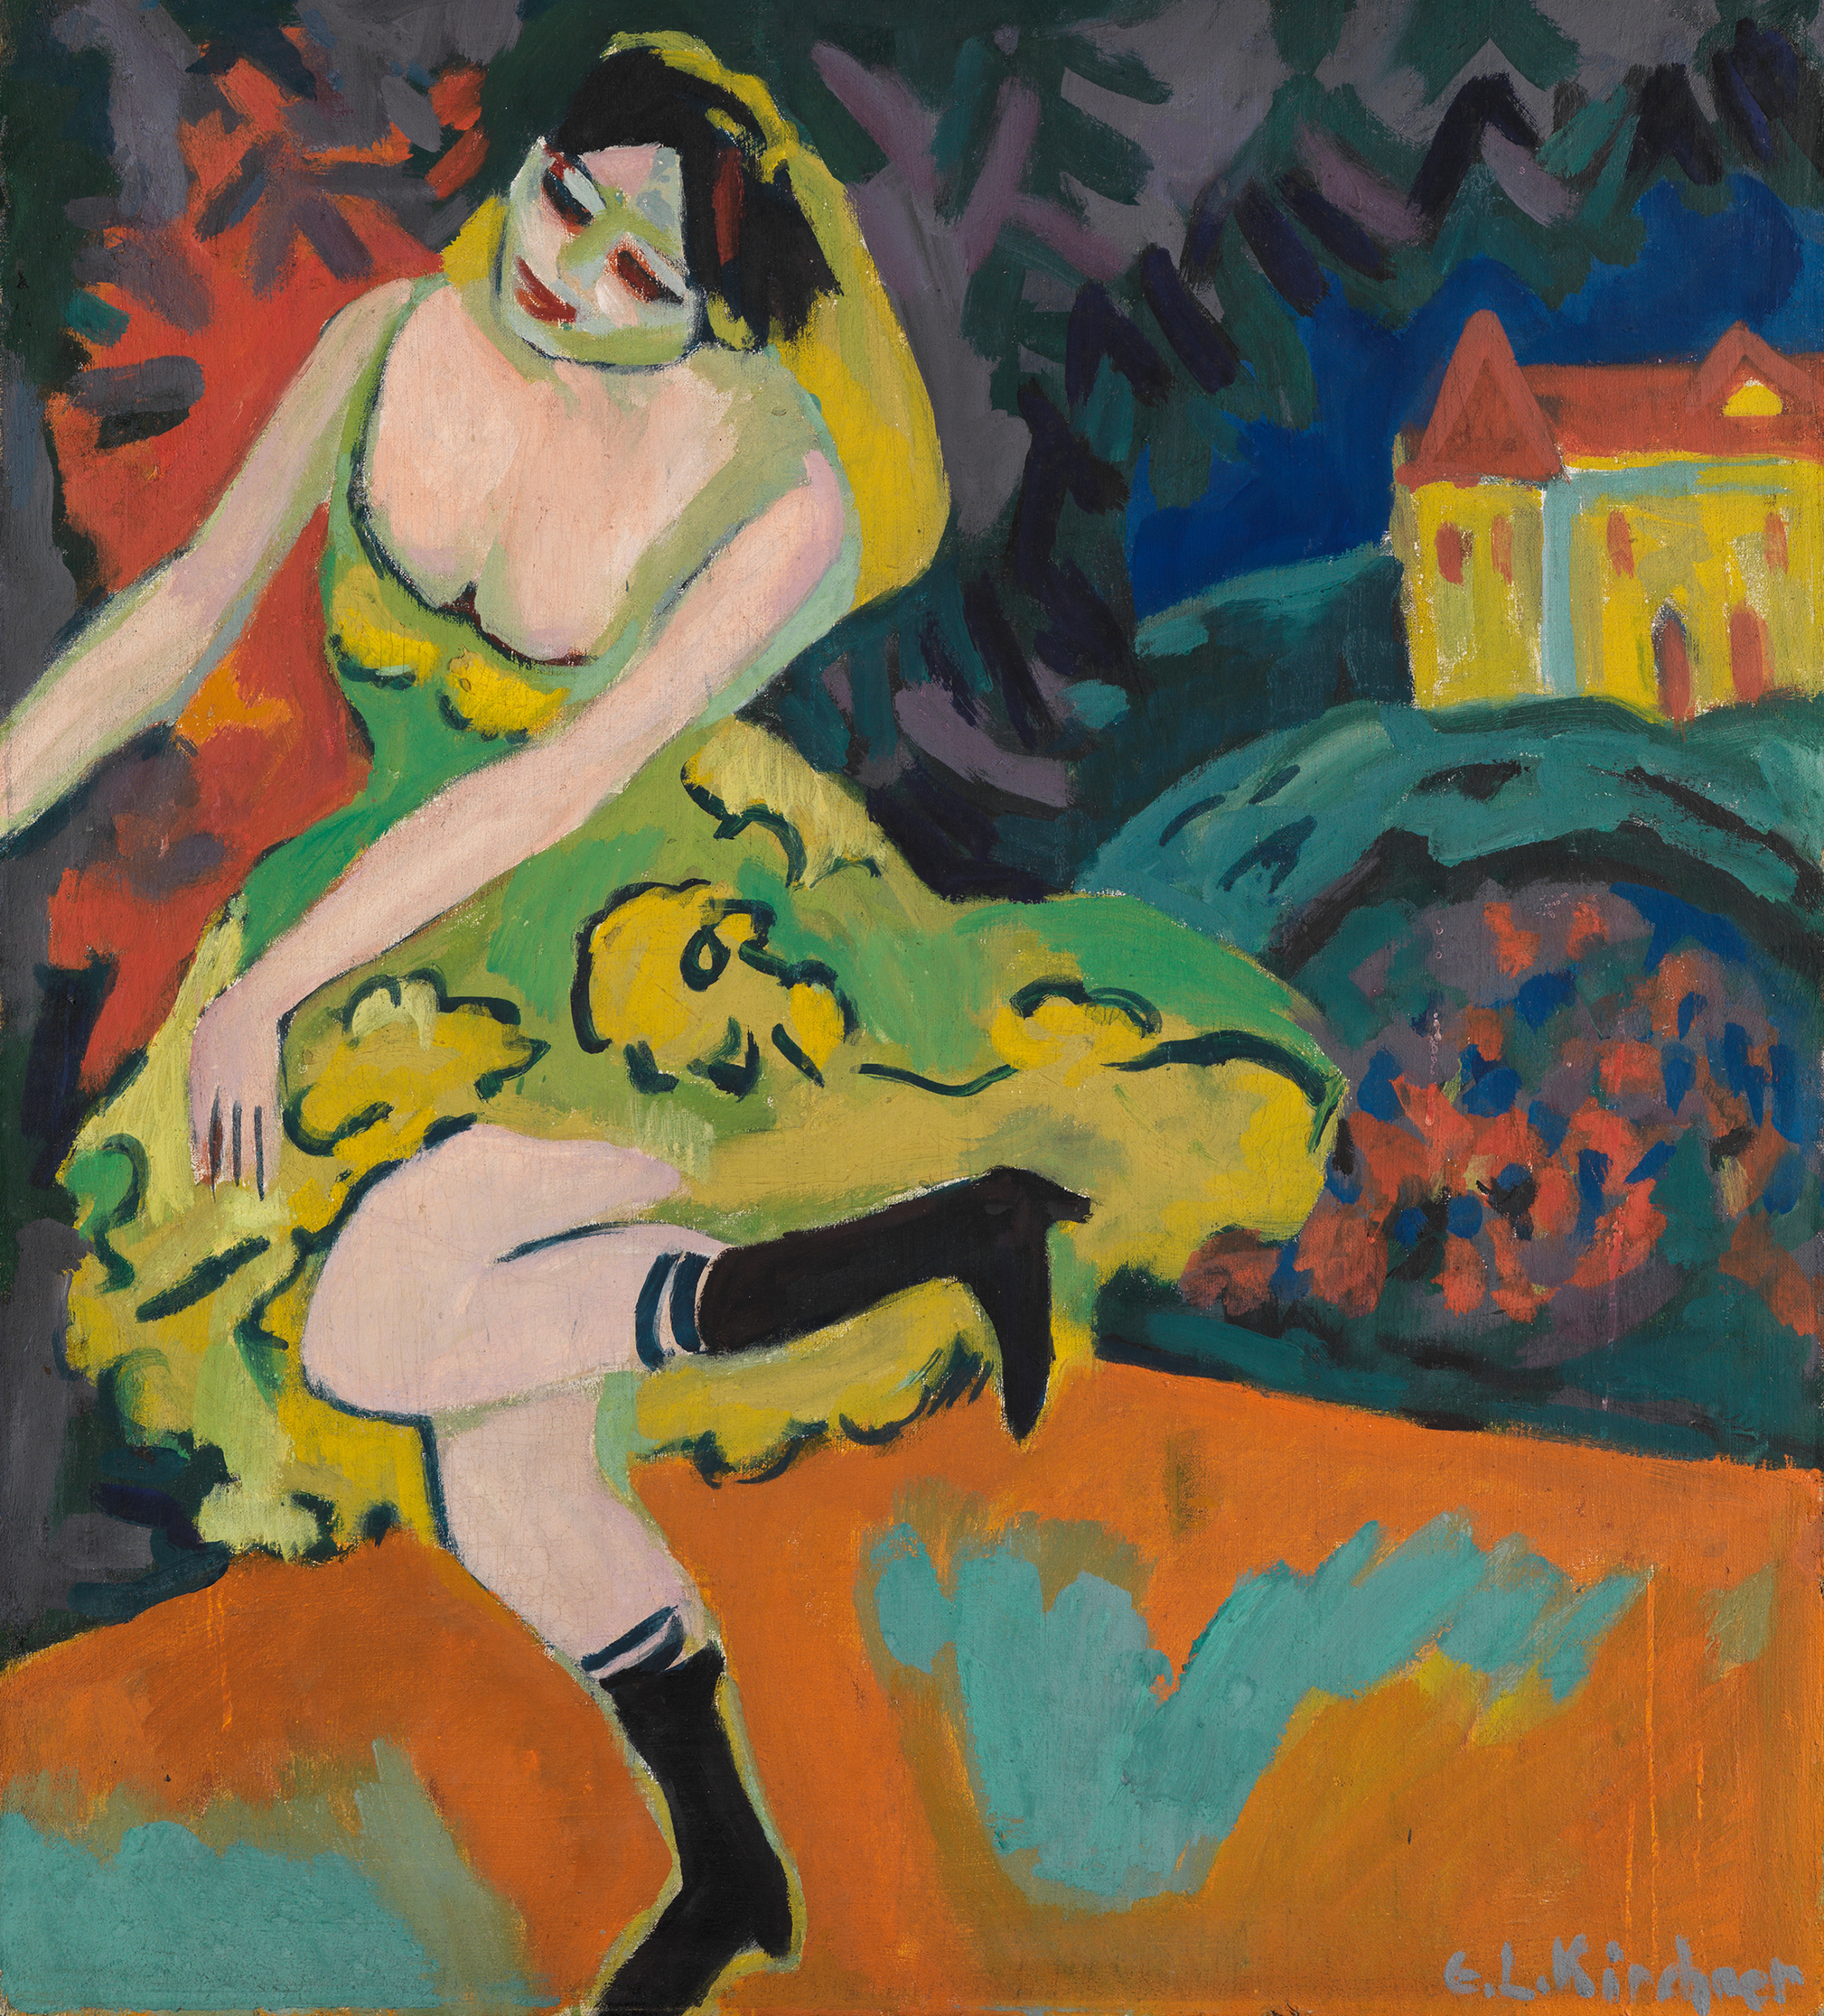 Das Kunstwerk zeigt eine farbenfrohe Darstellung einer Varietétänzerin, die gerade ihr Bein schwingt.